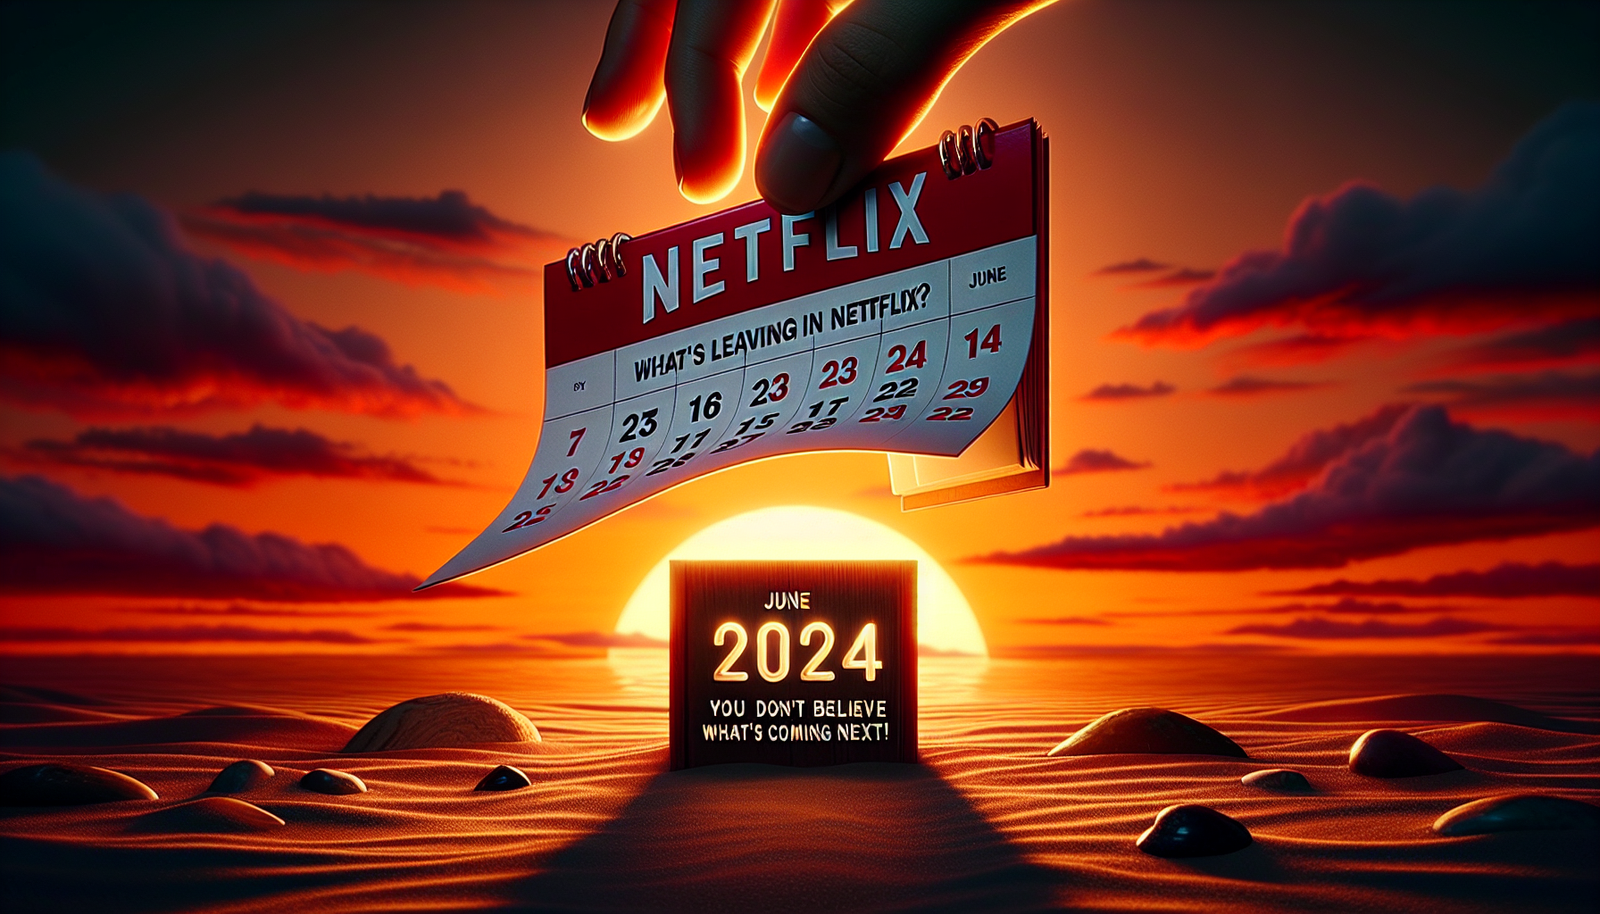 scopri cosa lascerà Netflix nel giugno 2024 e preparati a rimanere stupito da ciò che accadrà dopo! non perderti gli entusiasmanti cambiamenti futuri!